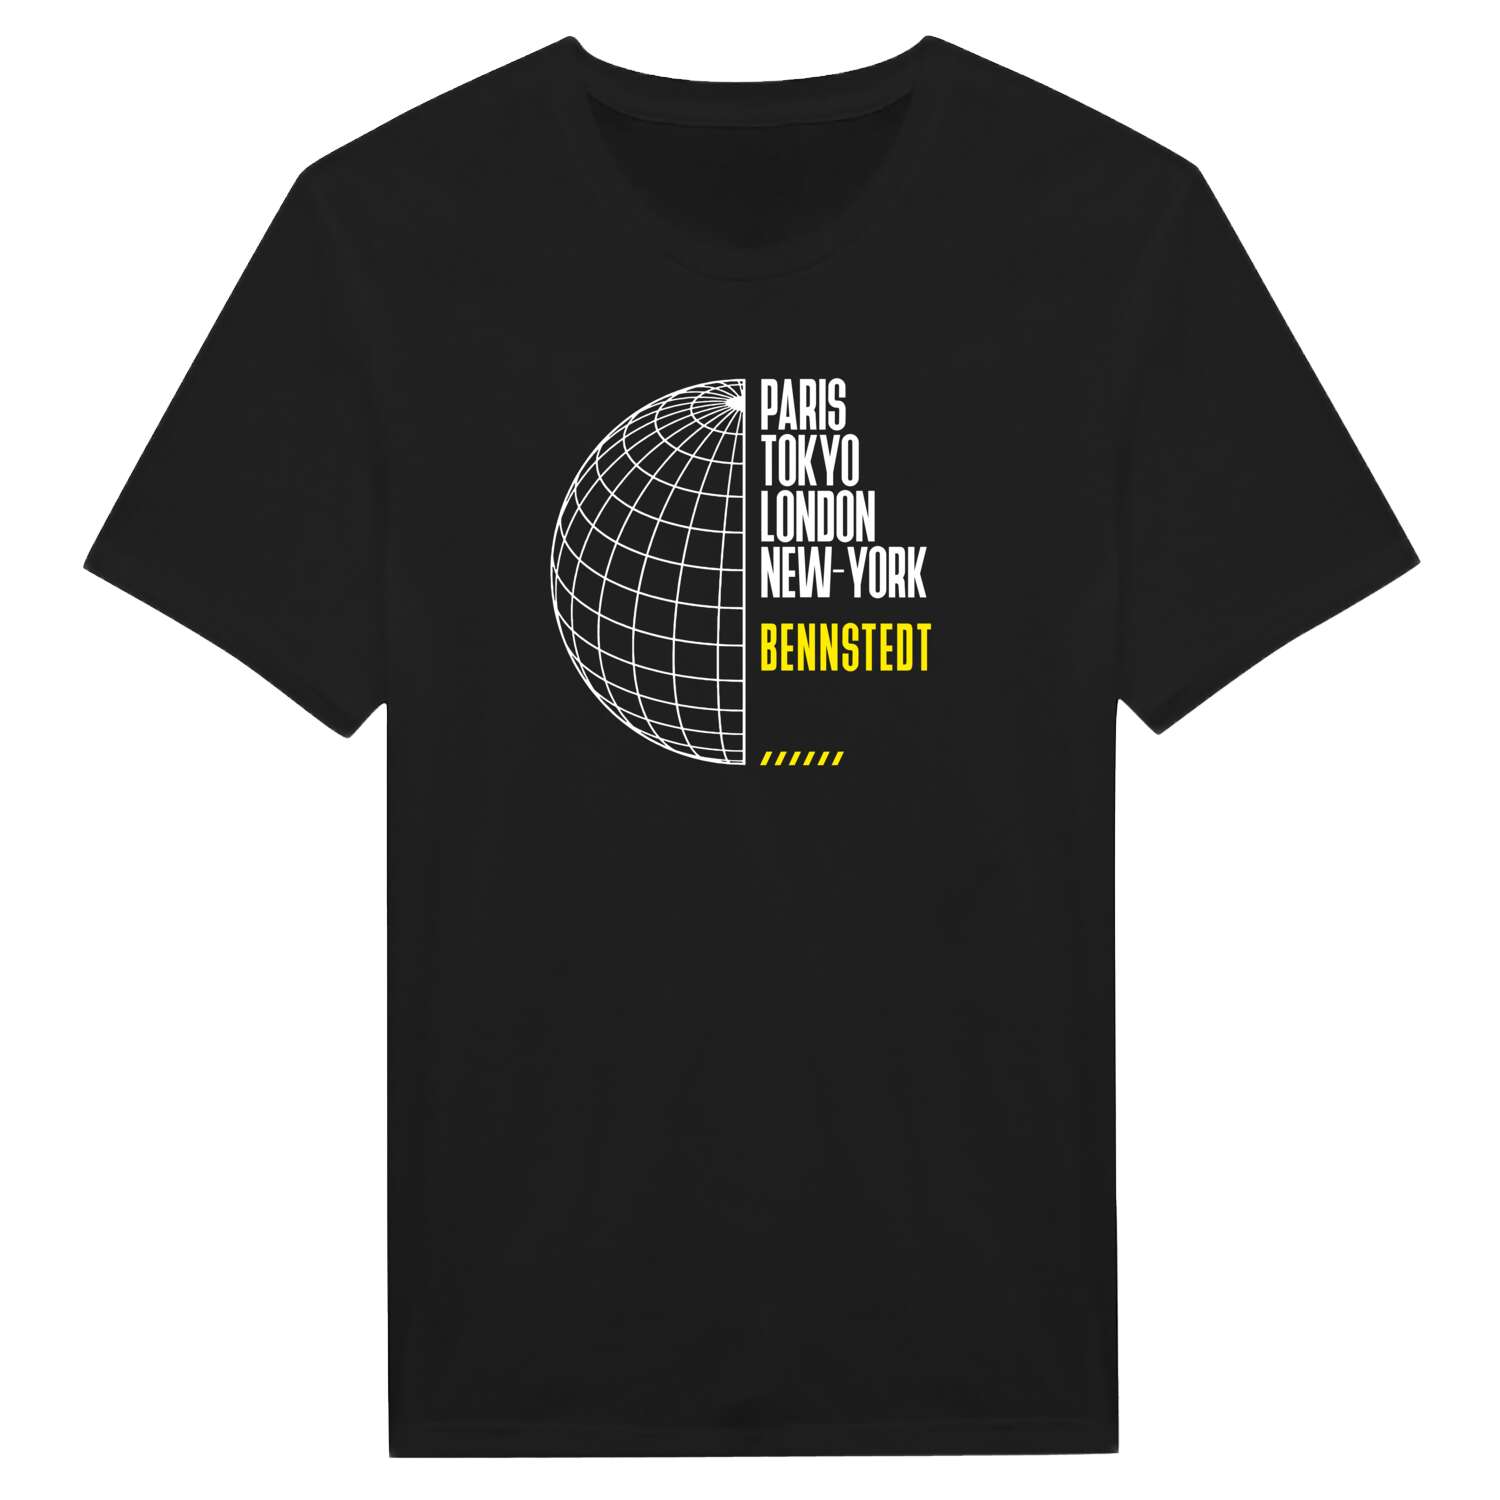 Bennstedt T-Shirt »Paris Tokyo London«